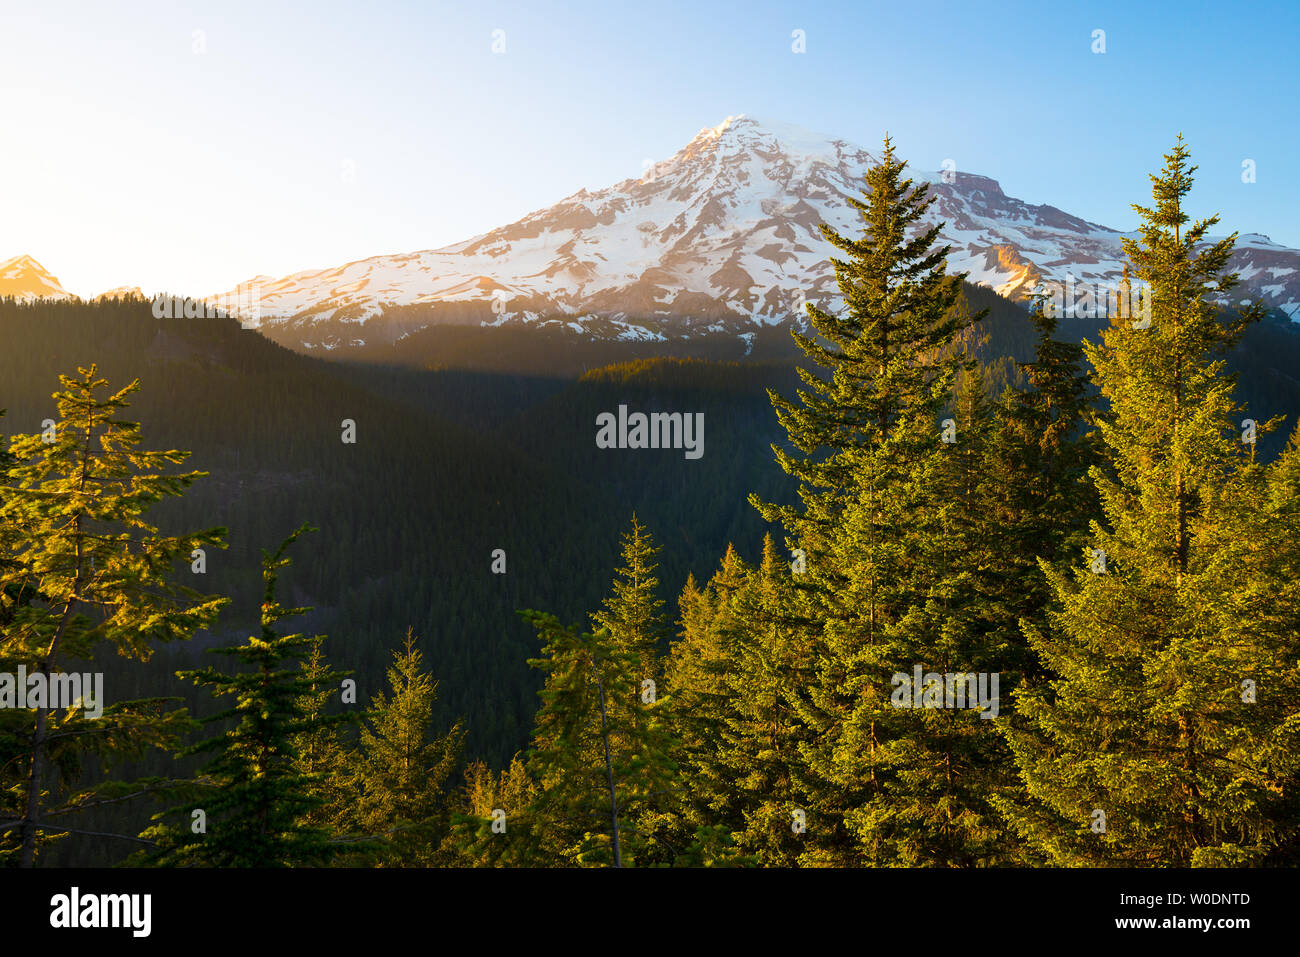 Mount Rainier at Mount Rainier National Park, Washington State, USA Stock Photo